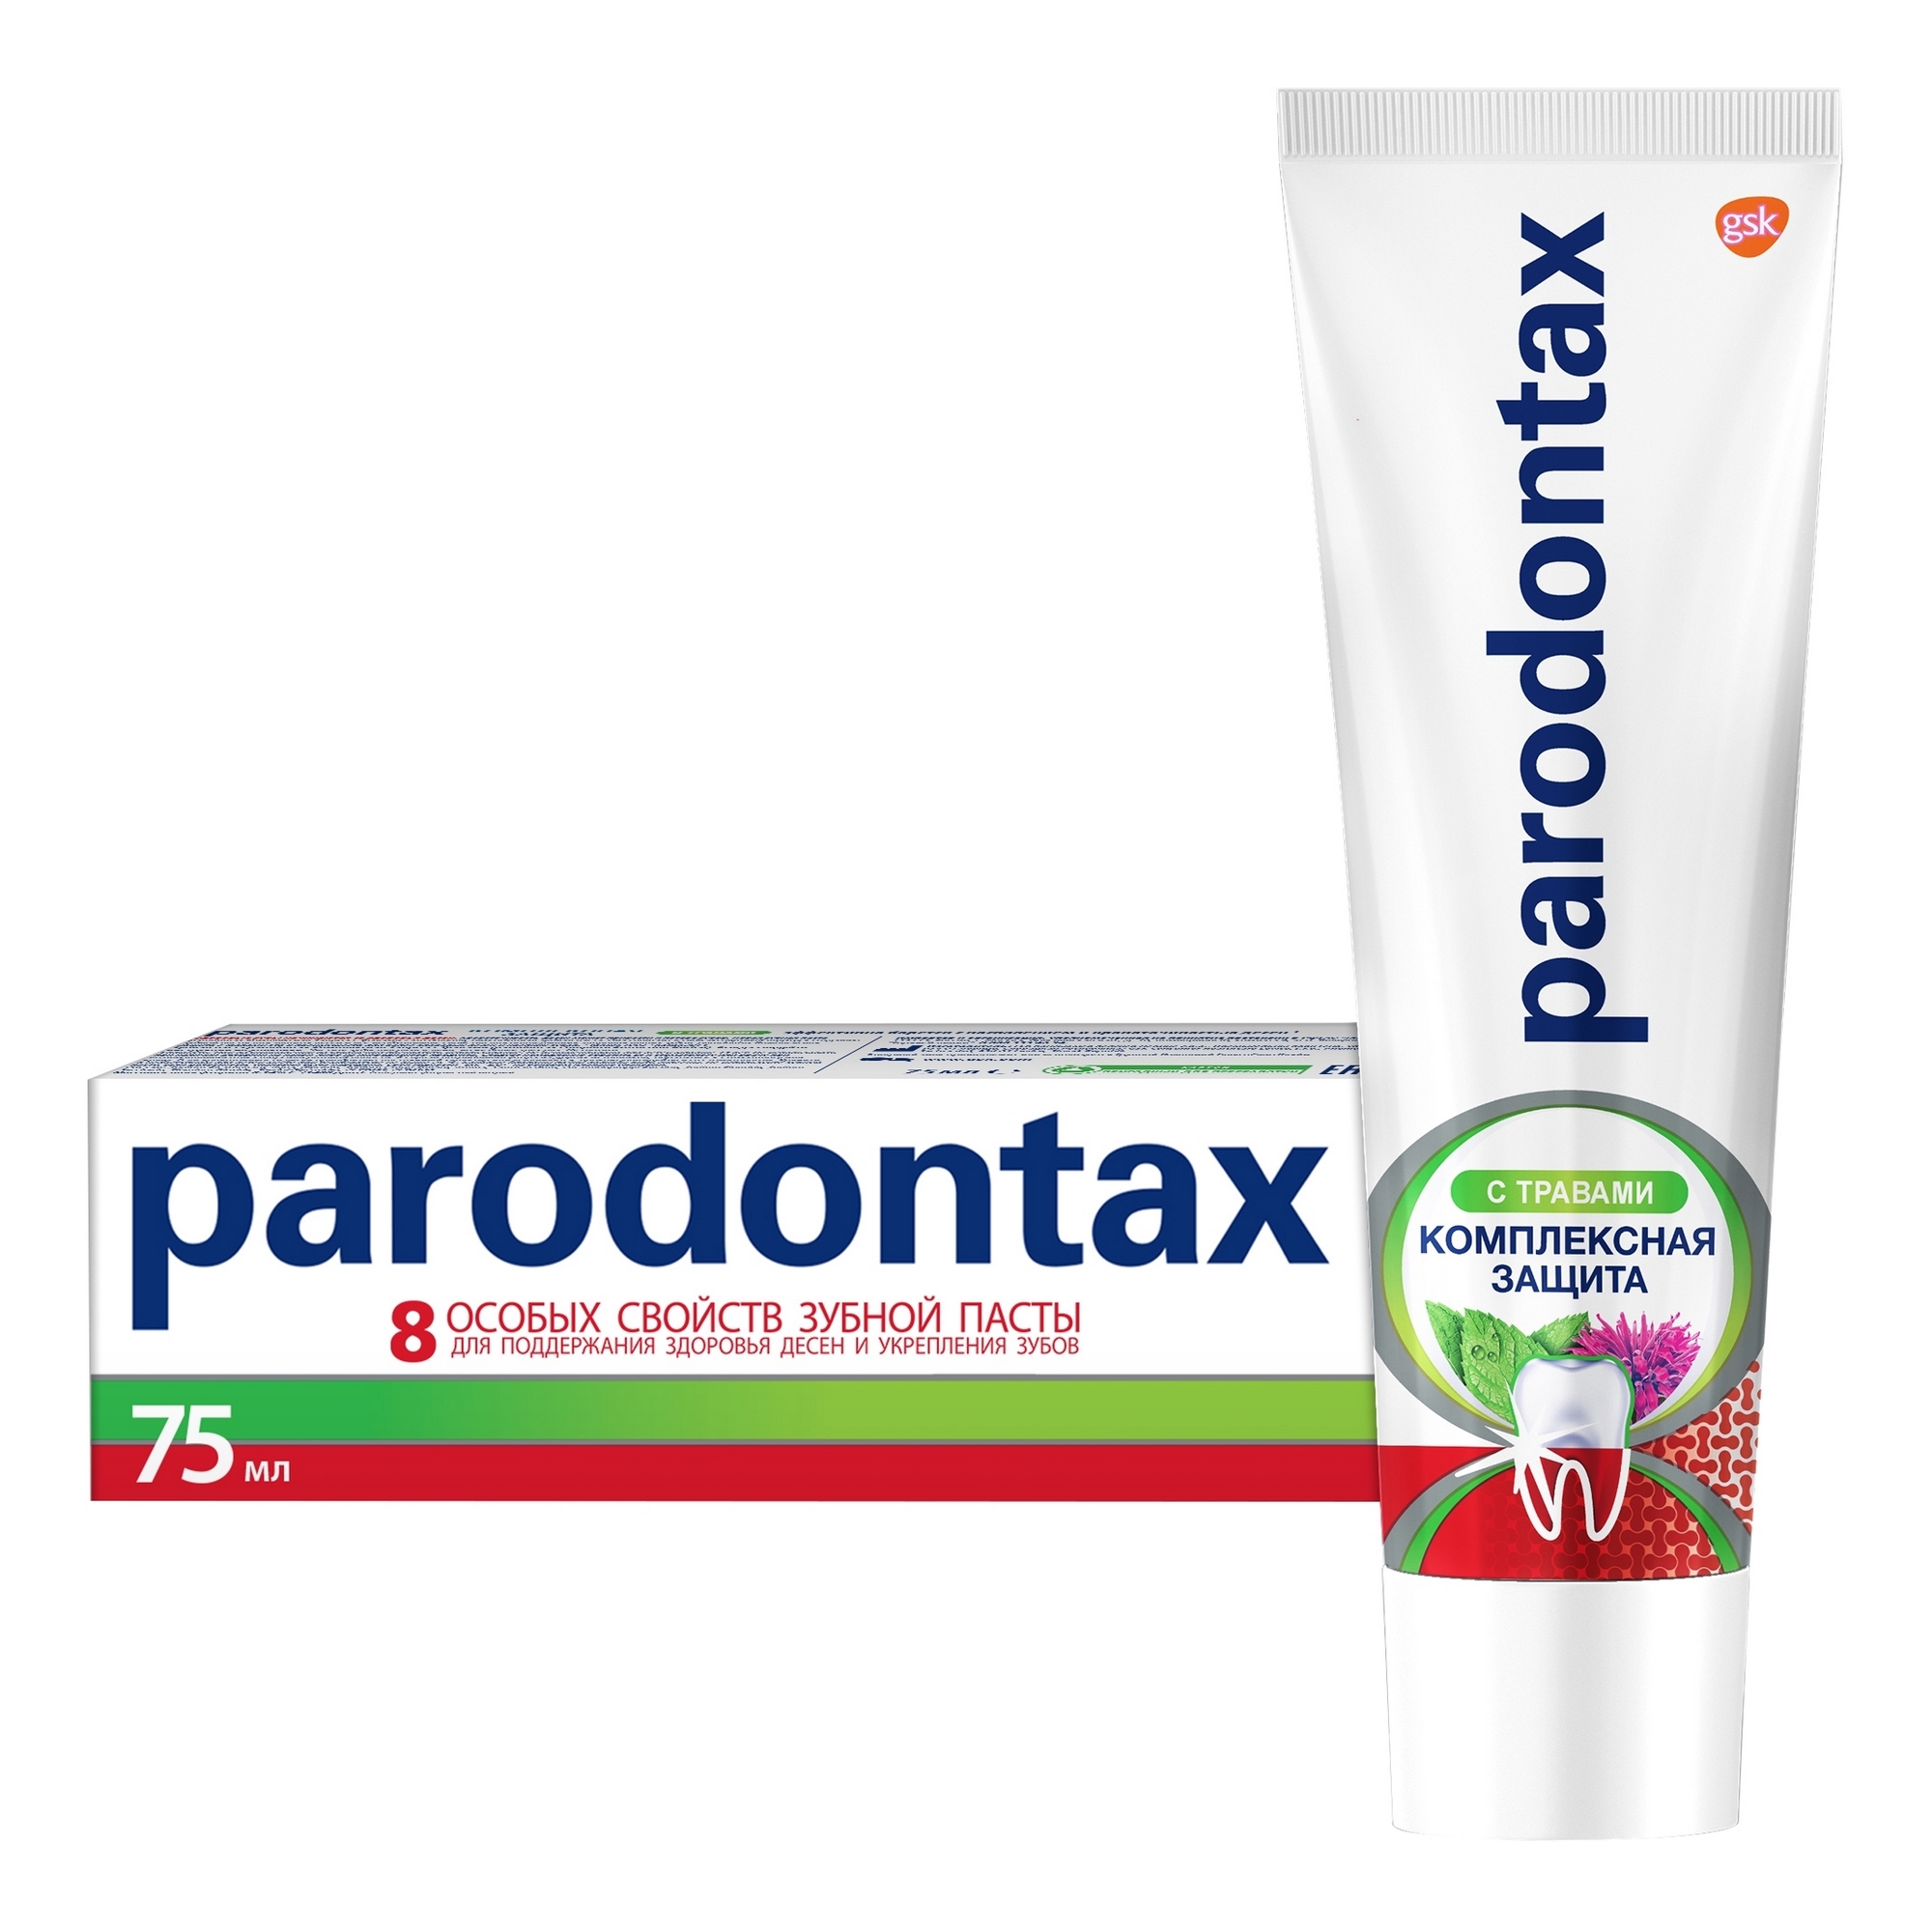 Зубная паста Parodontax Комплексная защита с травами 75 мл зубная паста parodontax комплексная защита и отбеливание 75 мл